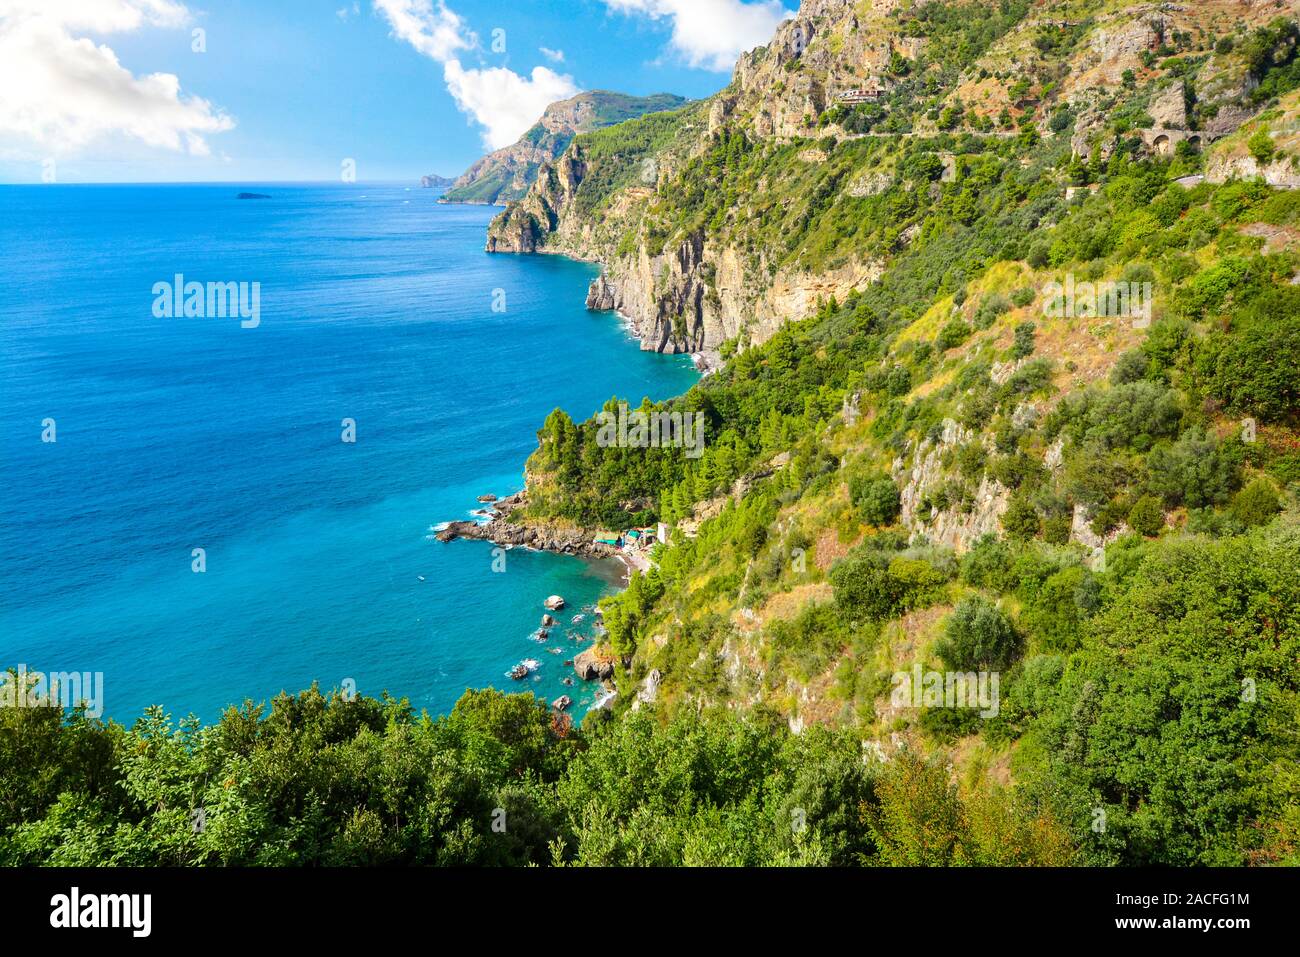 Ein Blick von der berühmten Amalfiküste fahren Sie in Richtung der Klippen, die Berge, die Küste, die Strände und das Mittelmeer in der Nähe von Sorrento, Italien Stockfoto